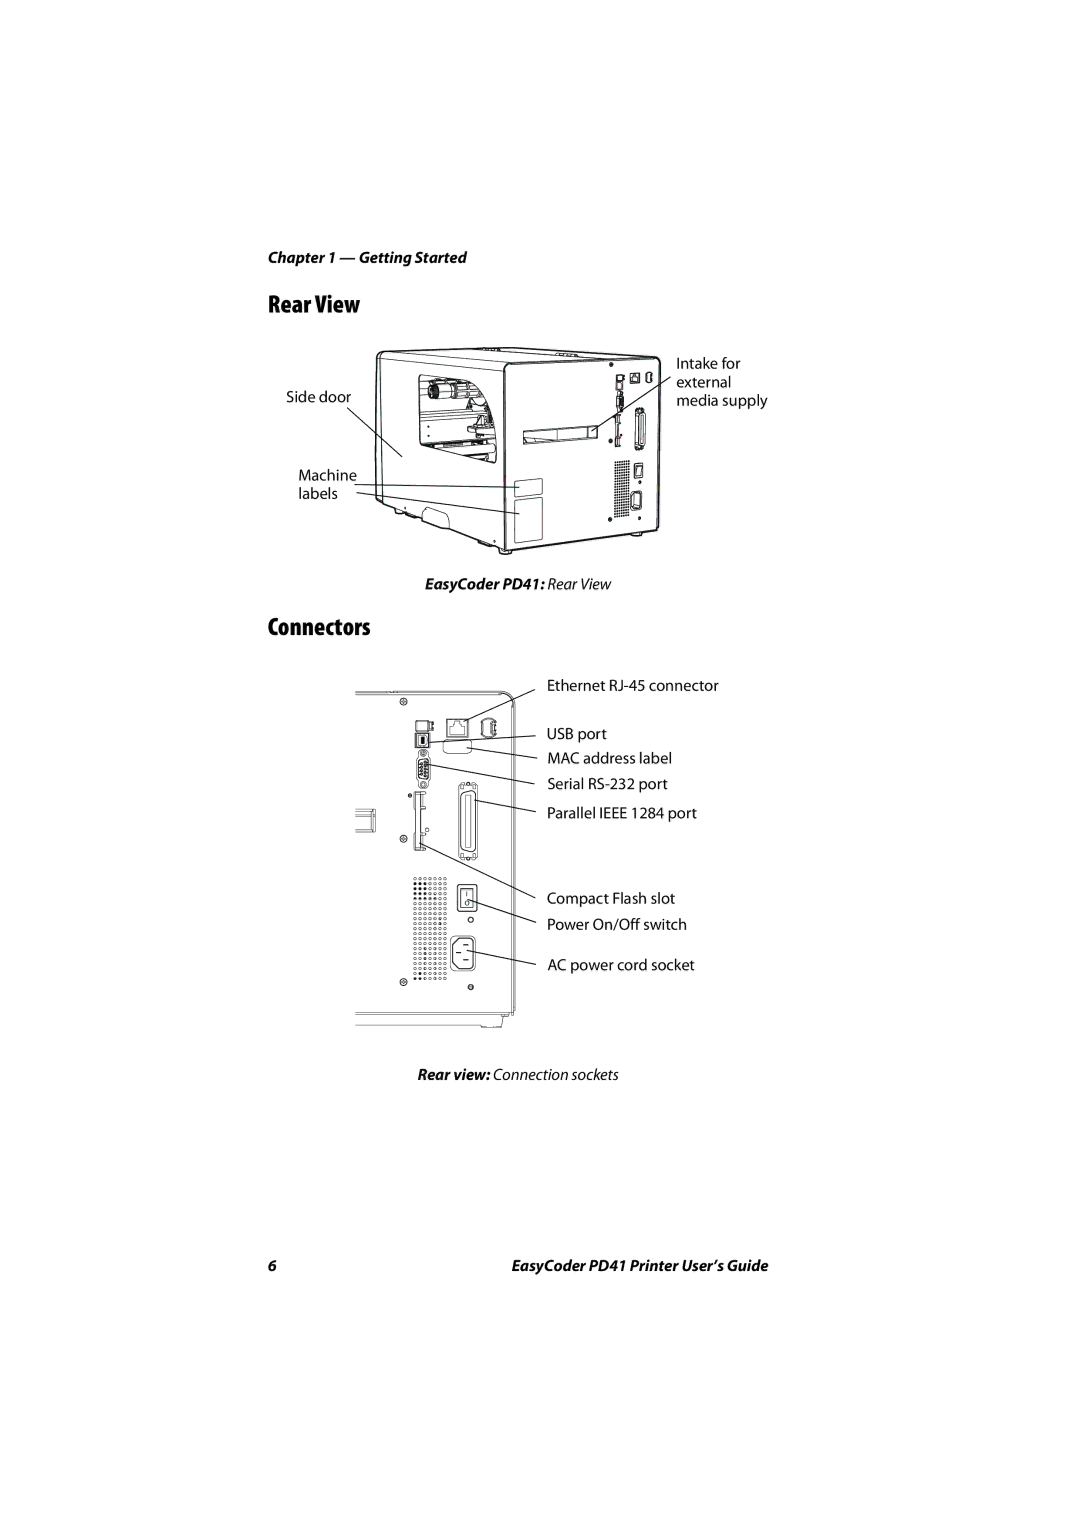 Intermec PD41 manual Rear View, Connectors 